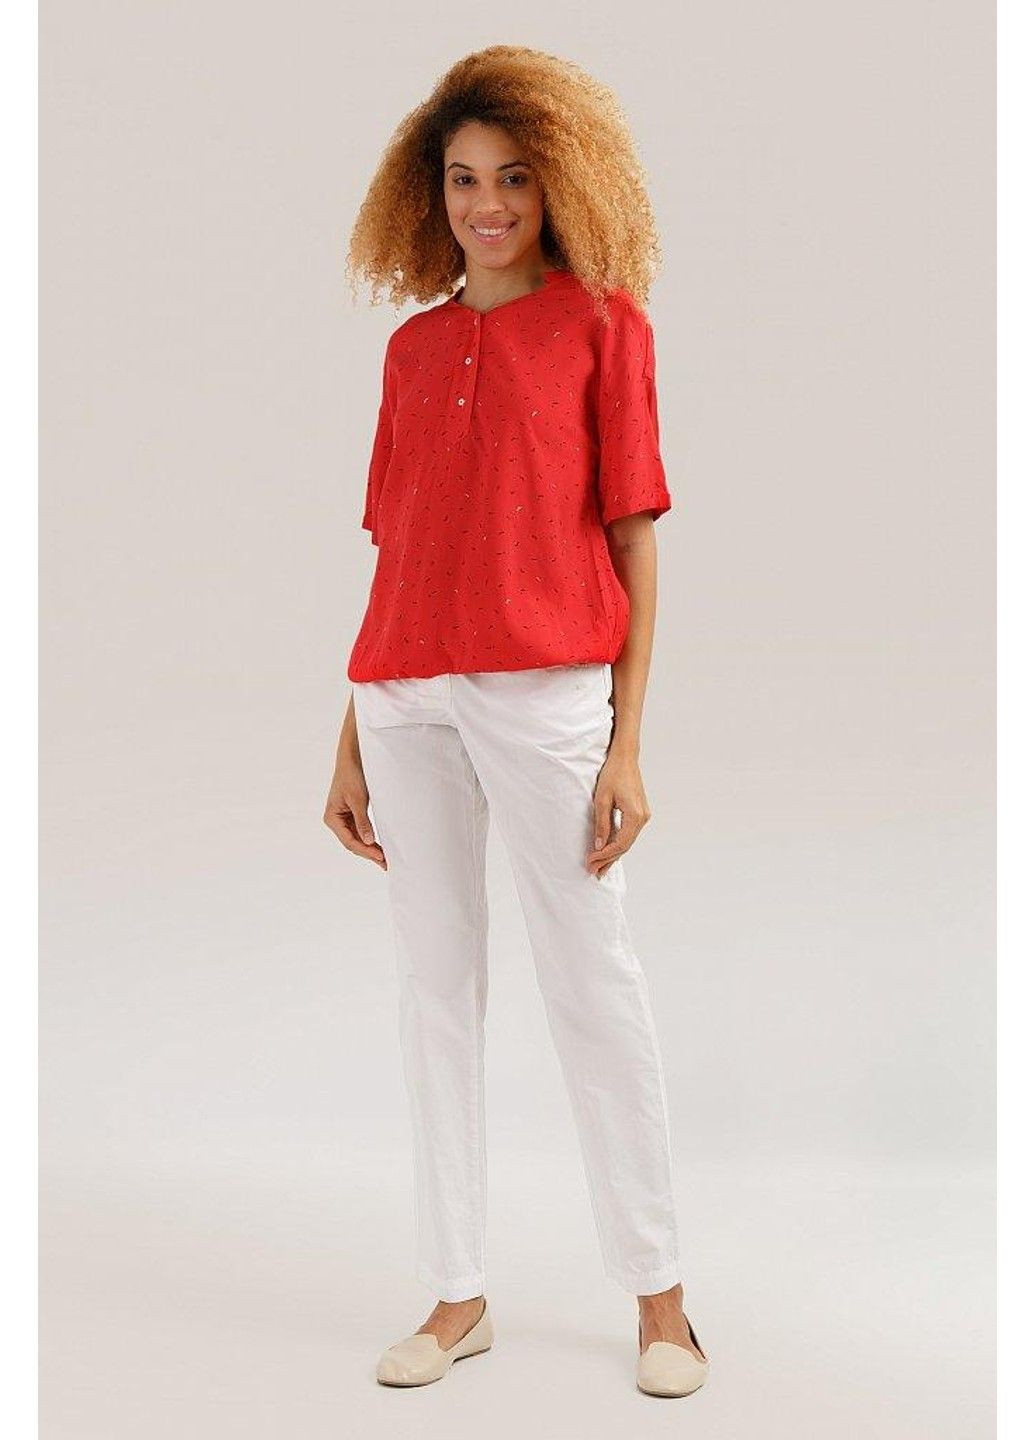 Червона літня блузка s19-14080-420 Finn Flare